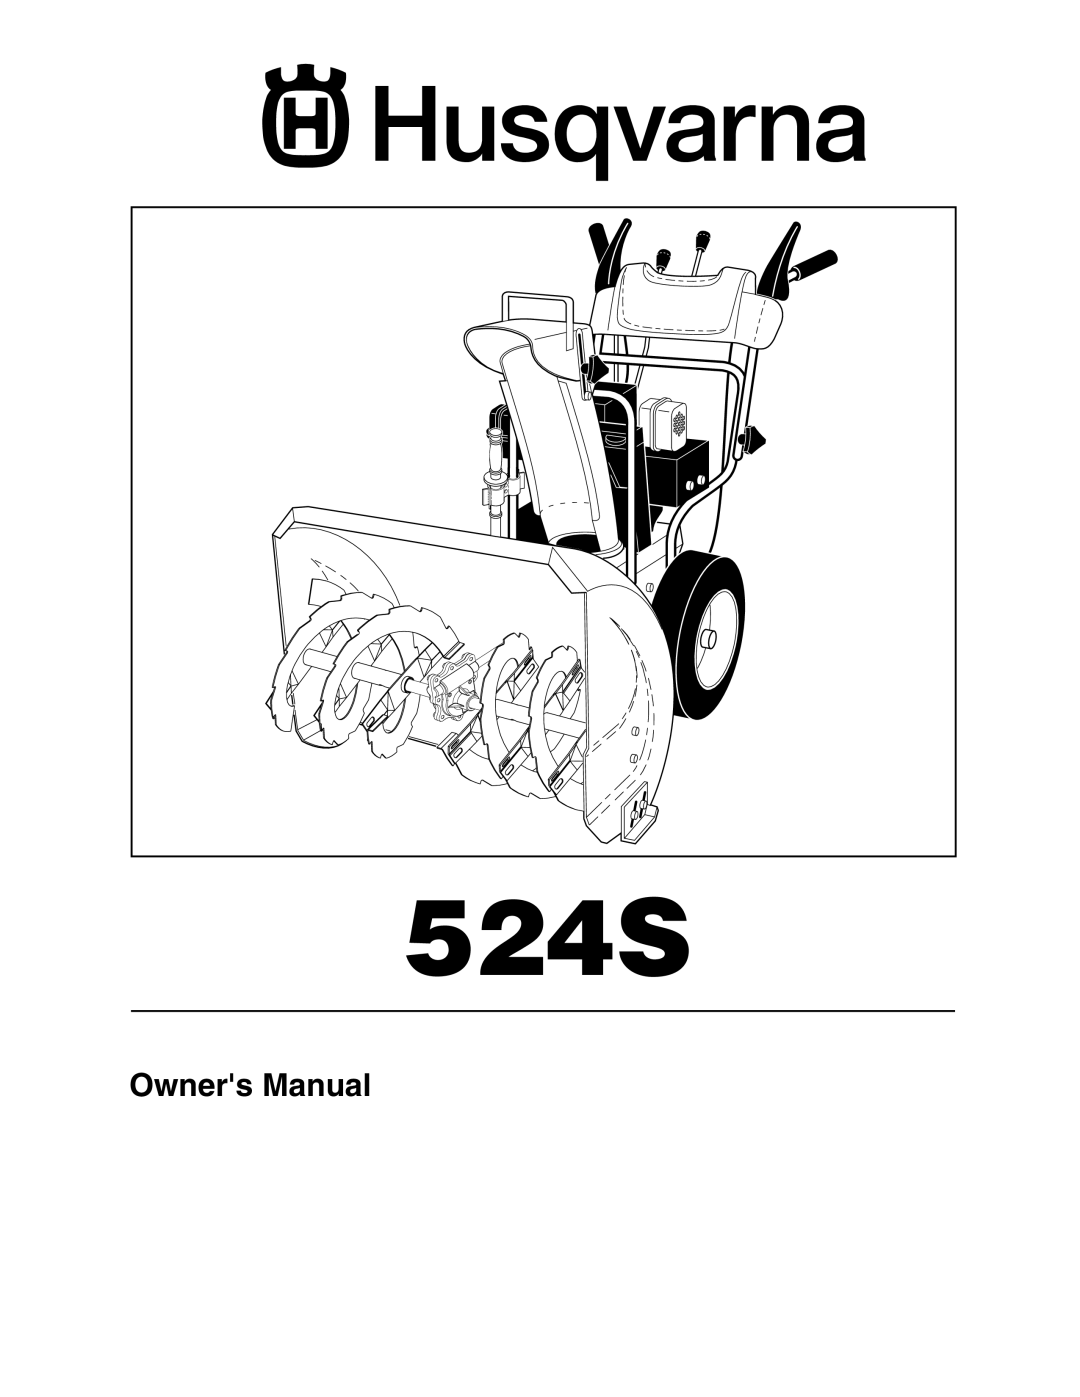 Husqvarna 524S owner manual Owners Manual 